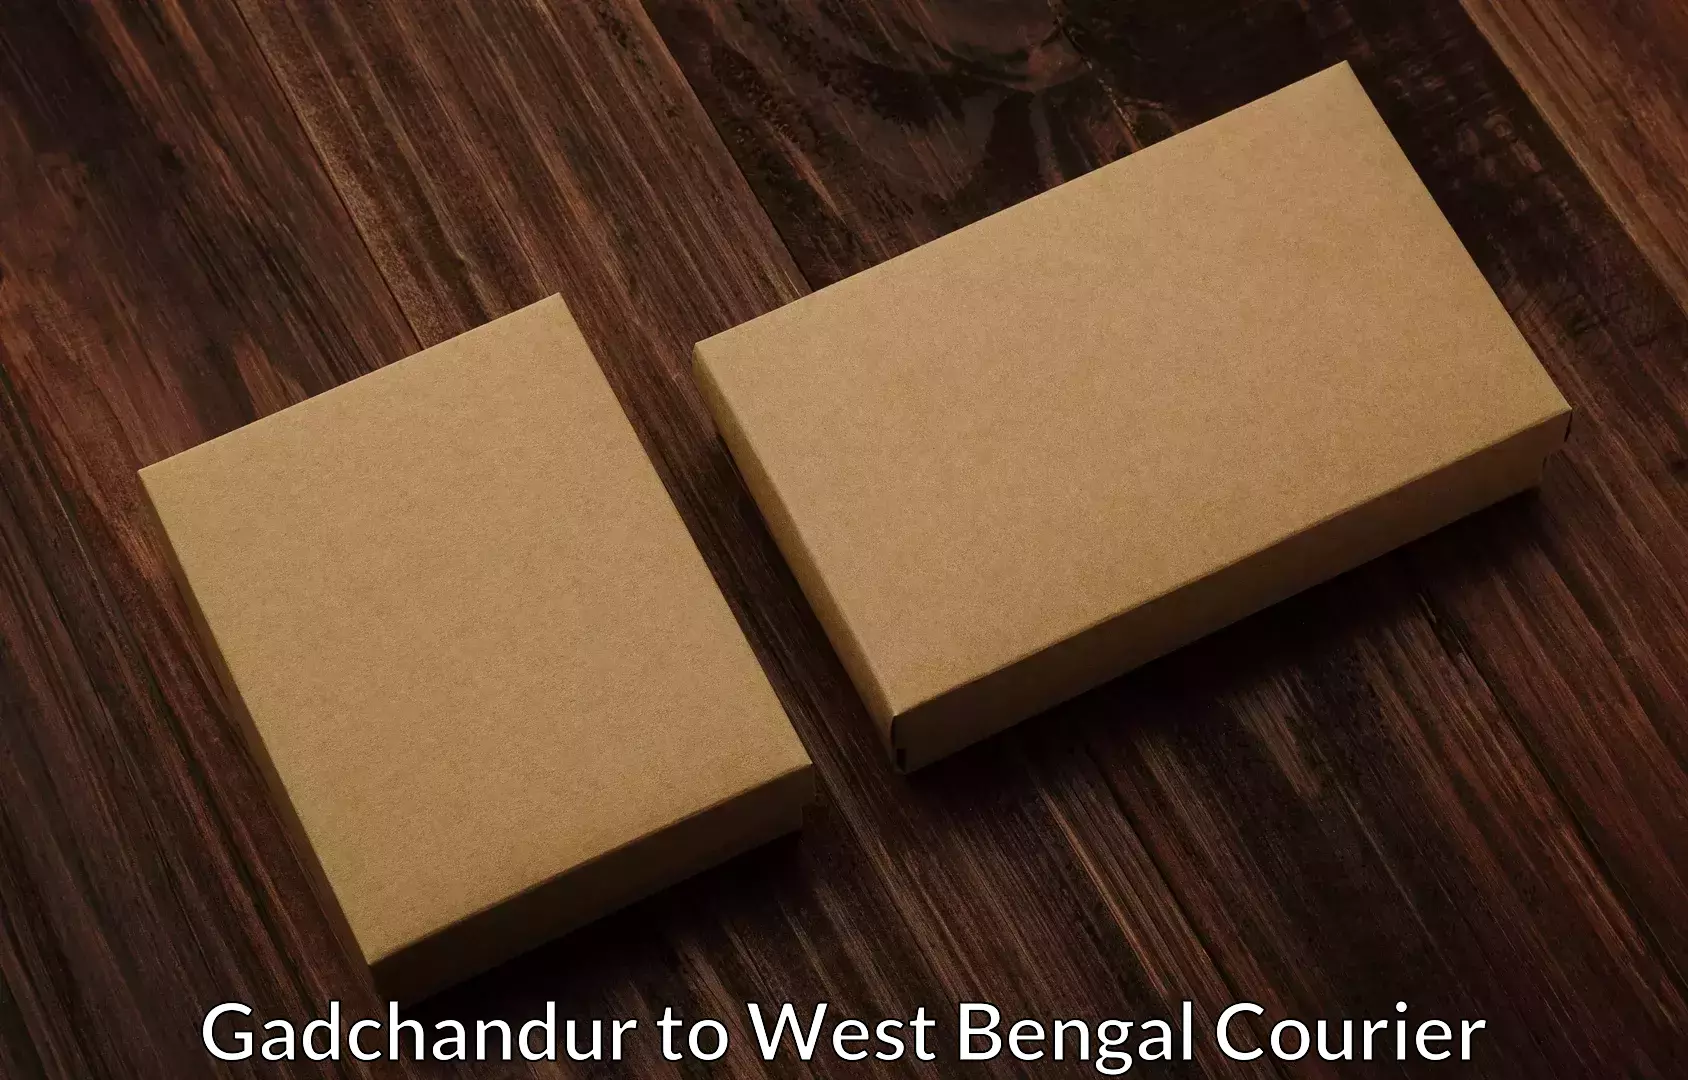 Furniture moving experts Gadchandur to Bhagabati